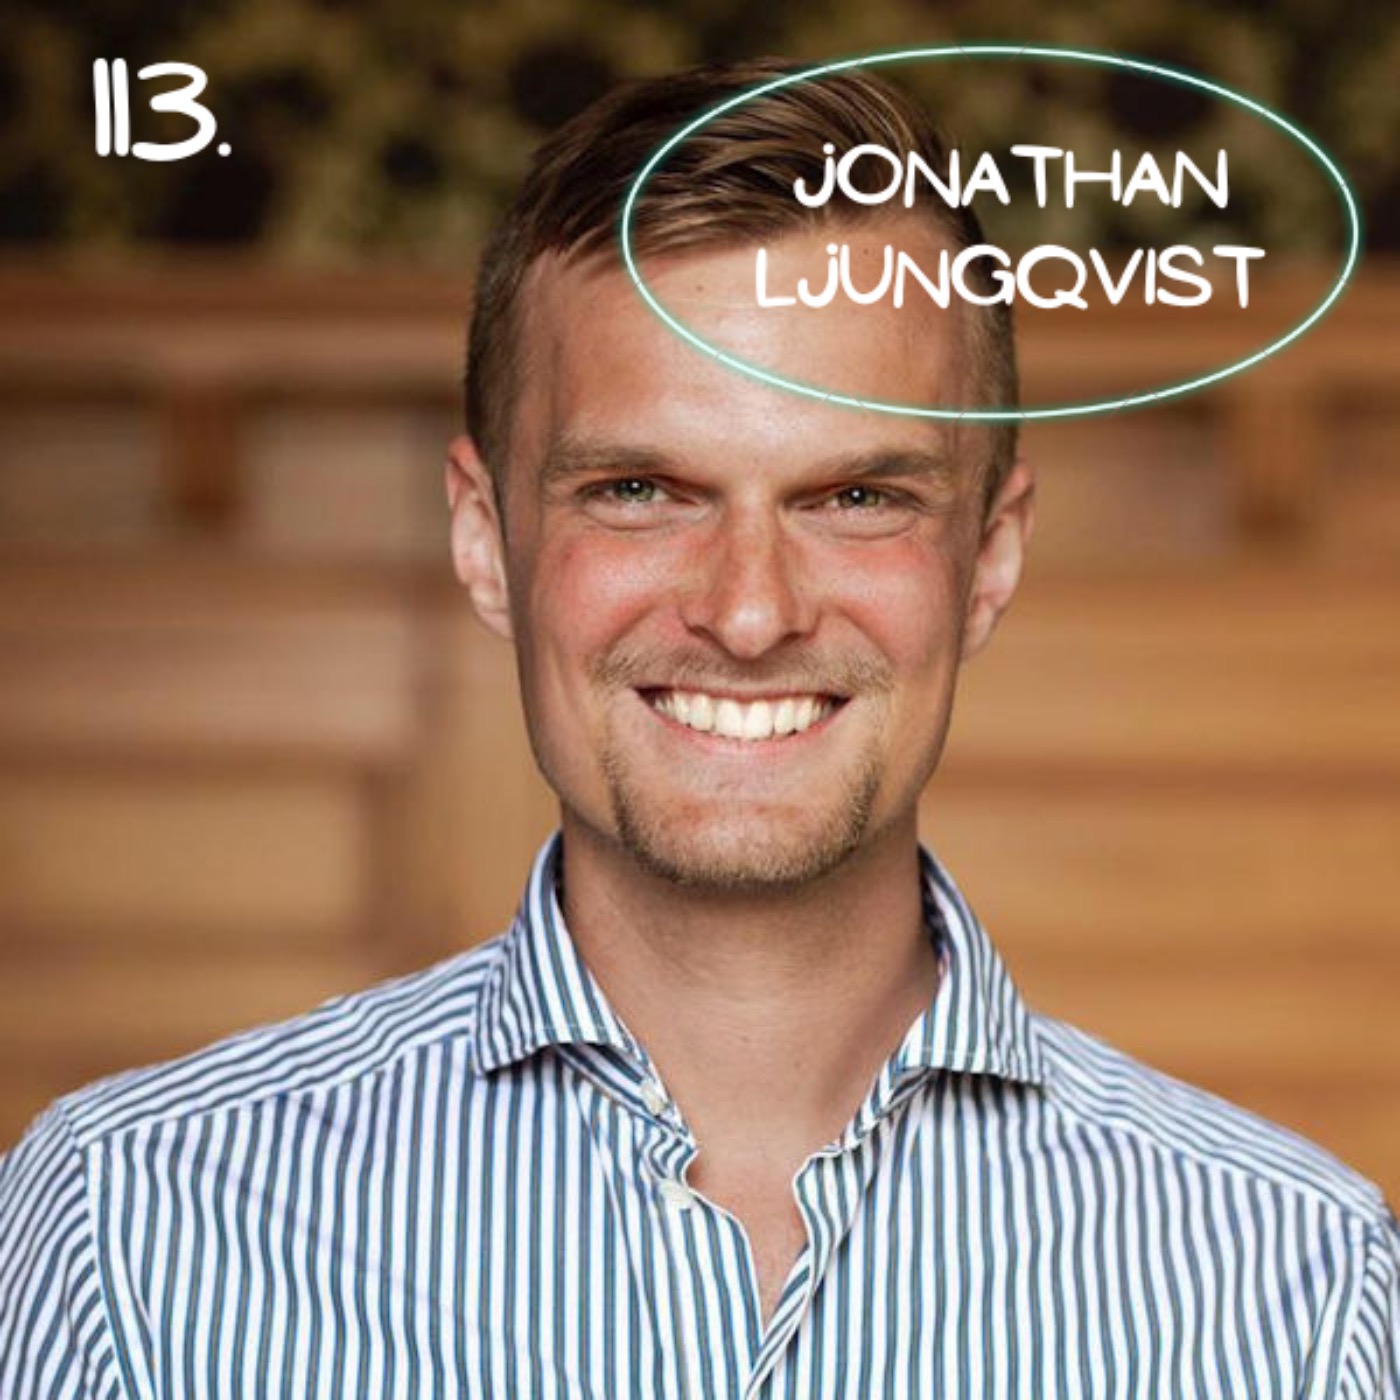 113. Jonathan Ljungqvist - Äventyren landade i miljoner